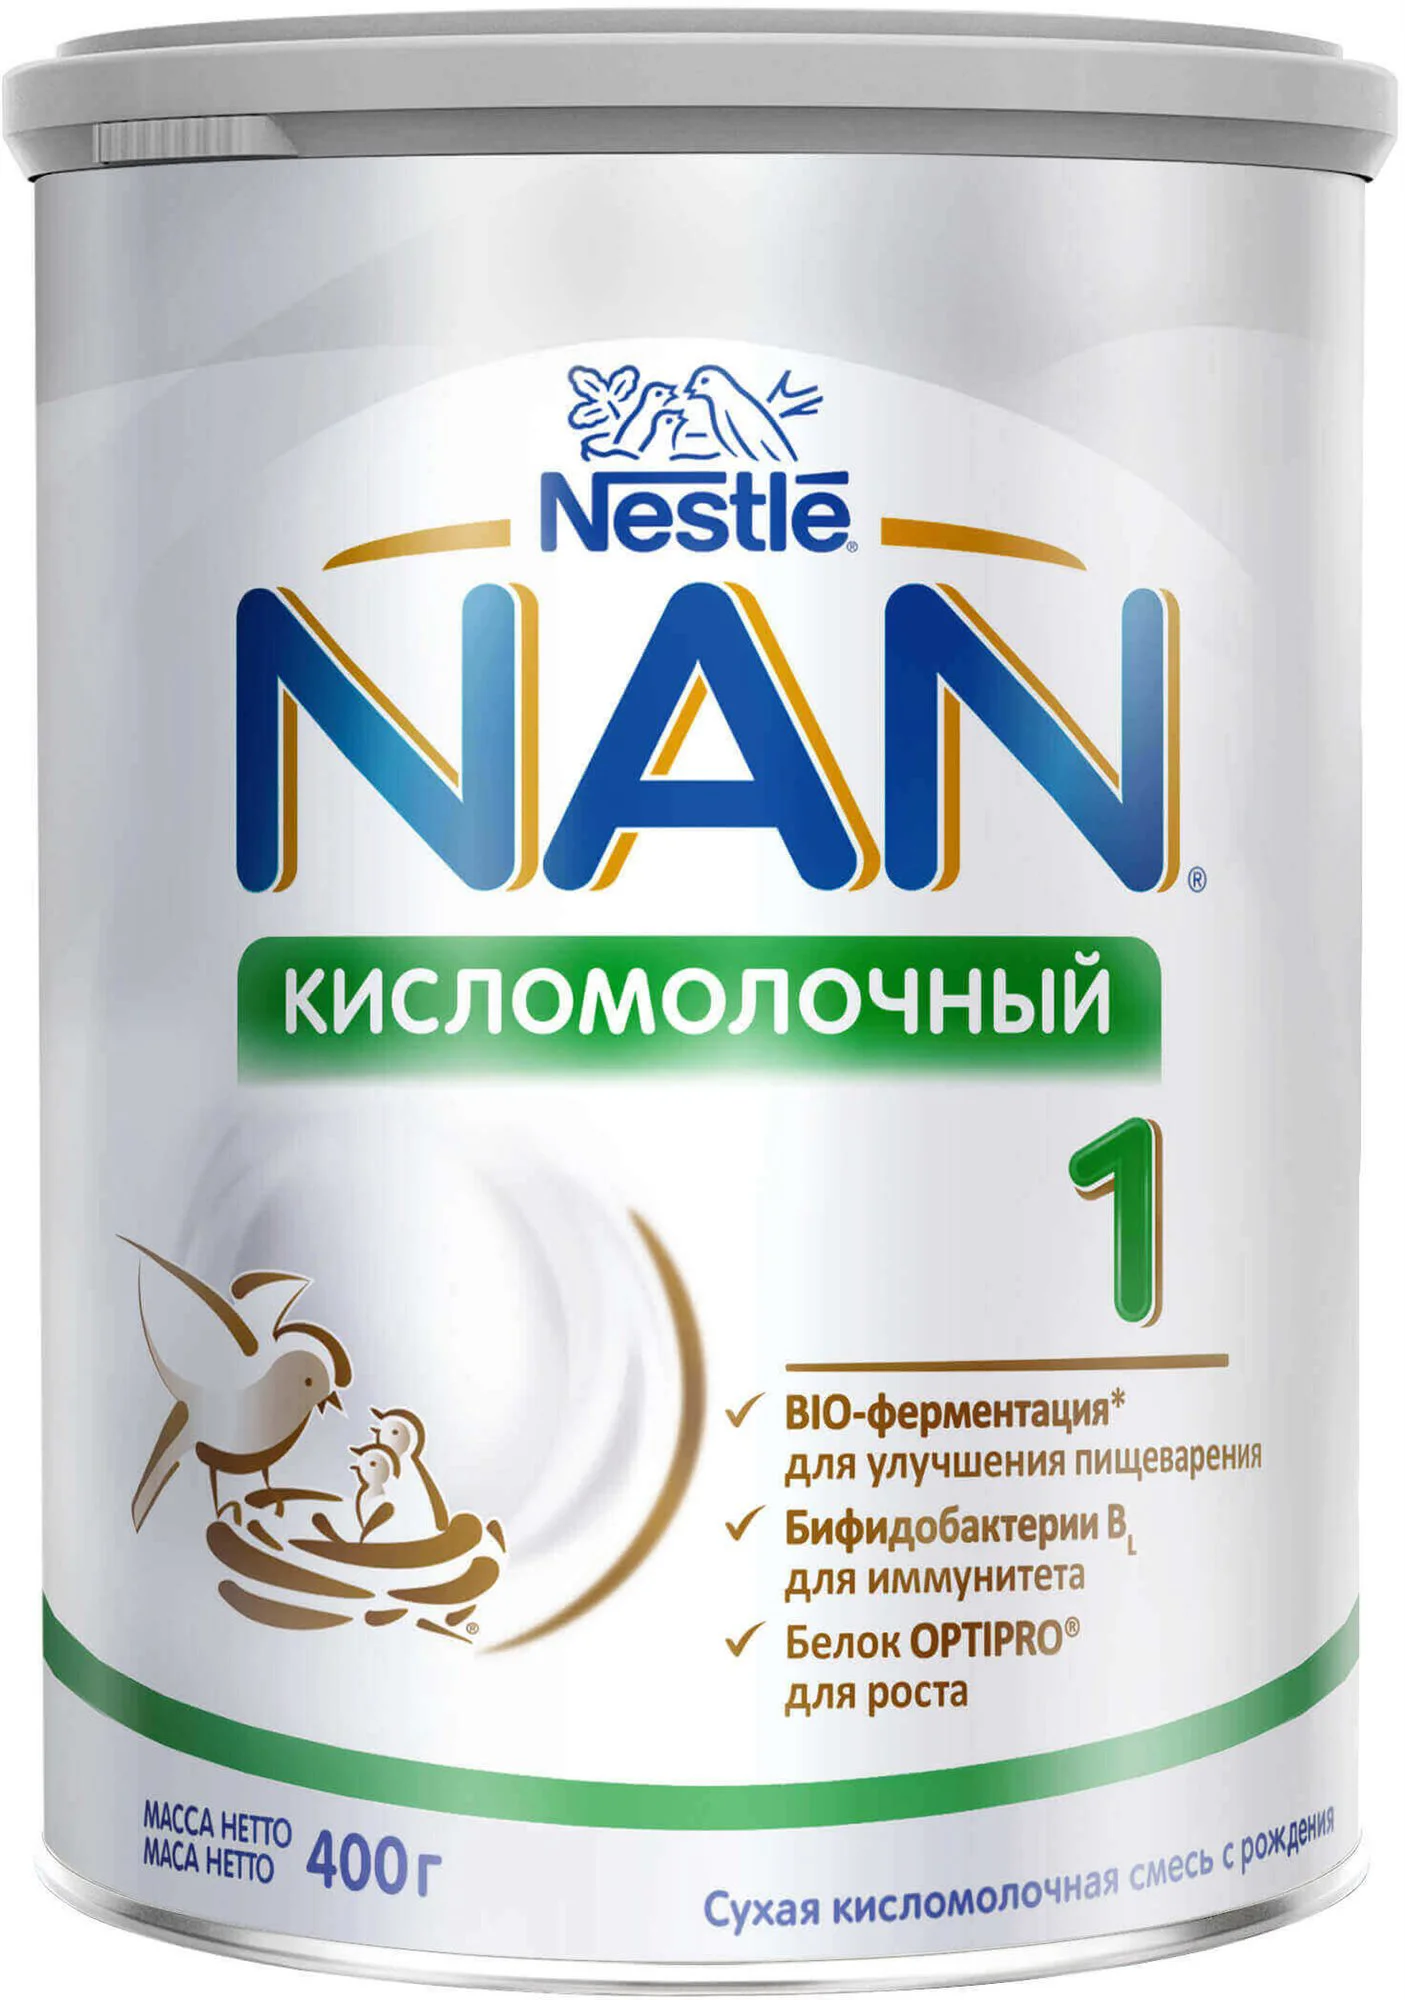 Детская молочная смесь Nestle Nan 1 Кисломолочный (0+ мес.), 400 г